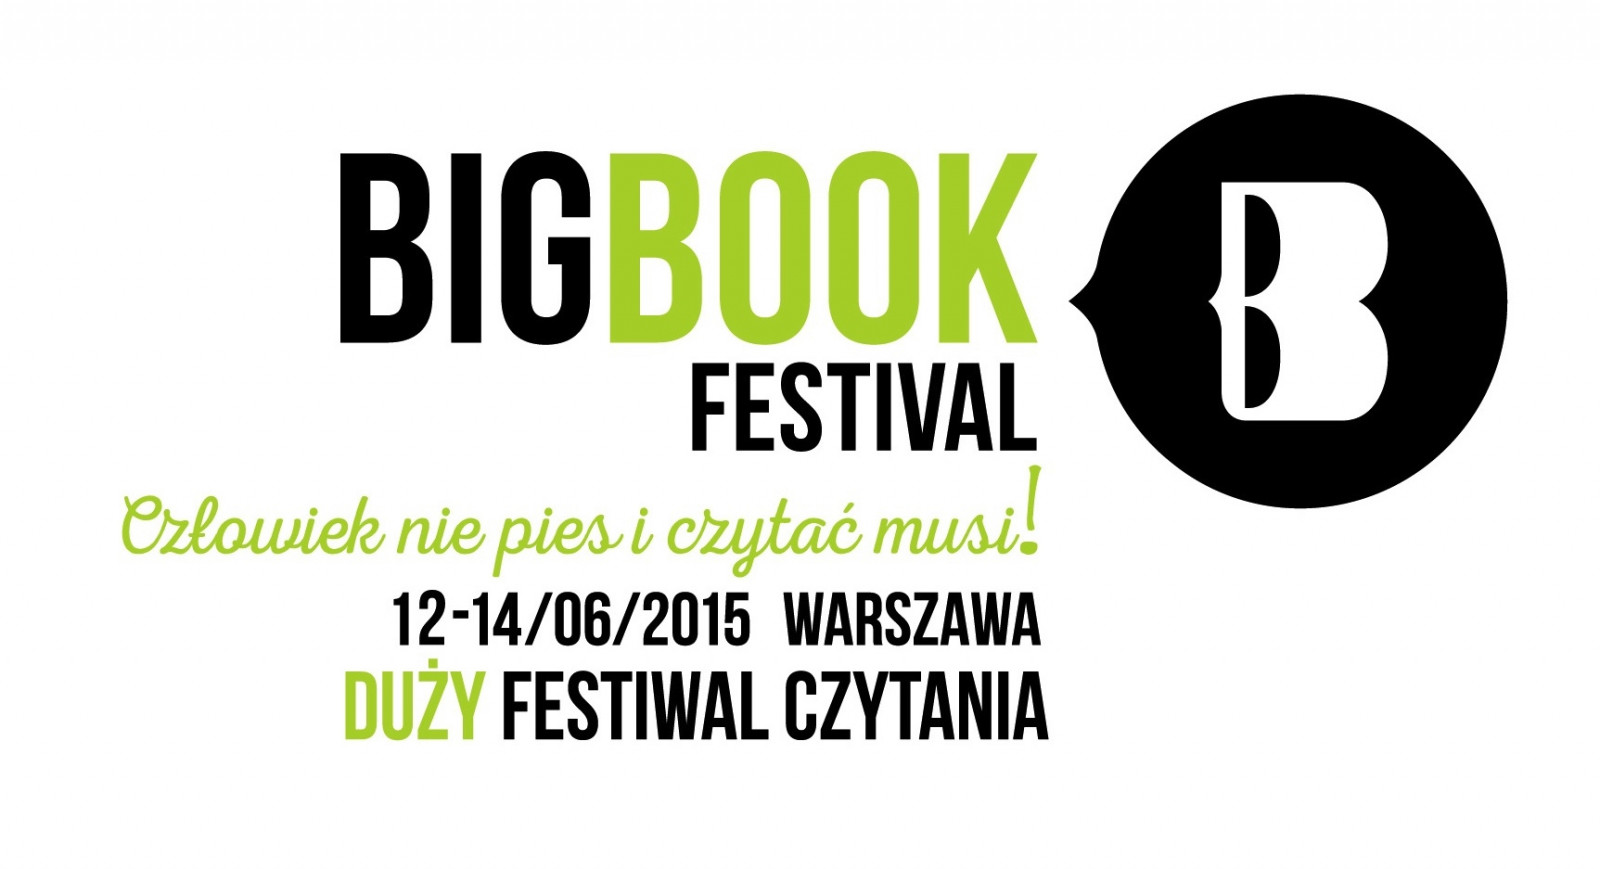 Big Book Festival – Wywiad z Anną Król - Kurier Literacki #9.5